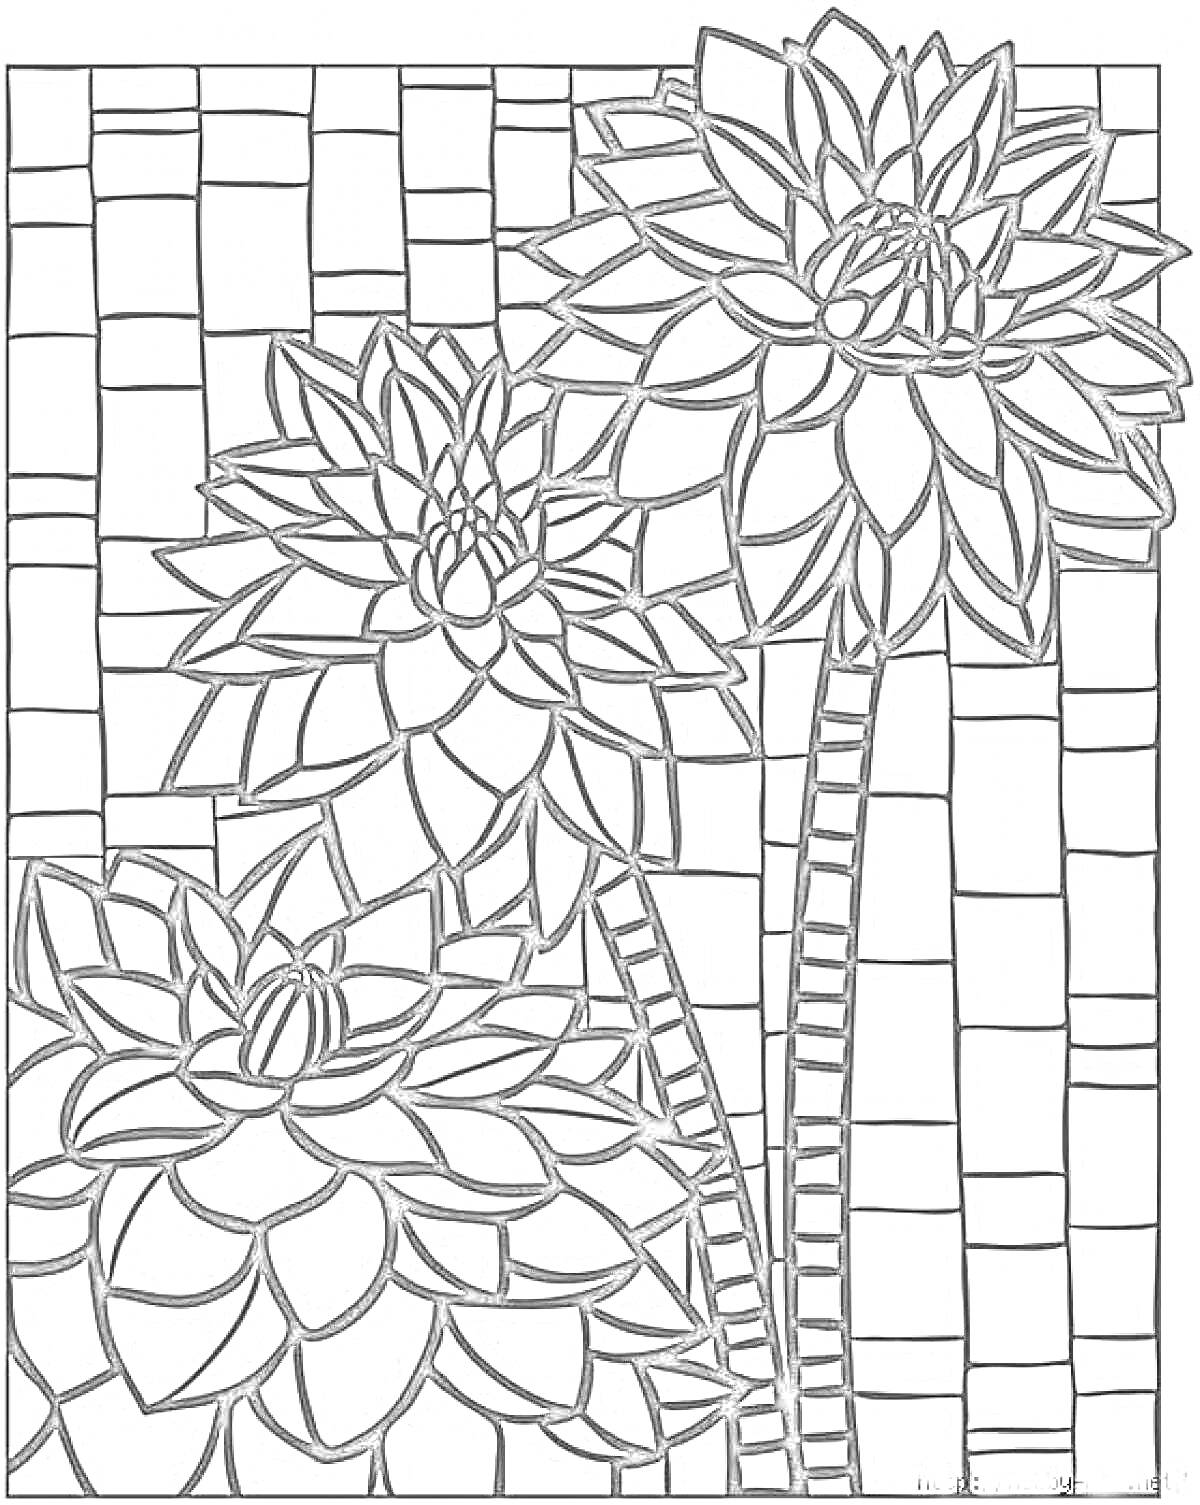 Три цветка на фоне мозаики из квадратов и прямоугольников